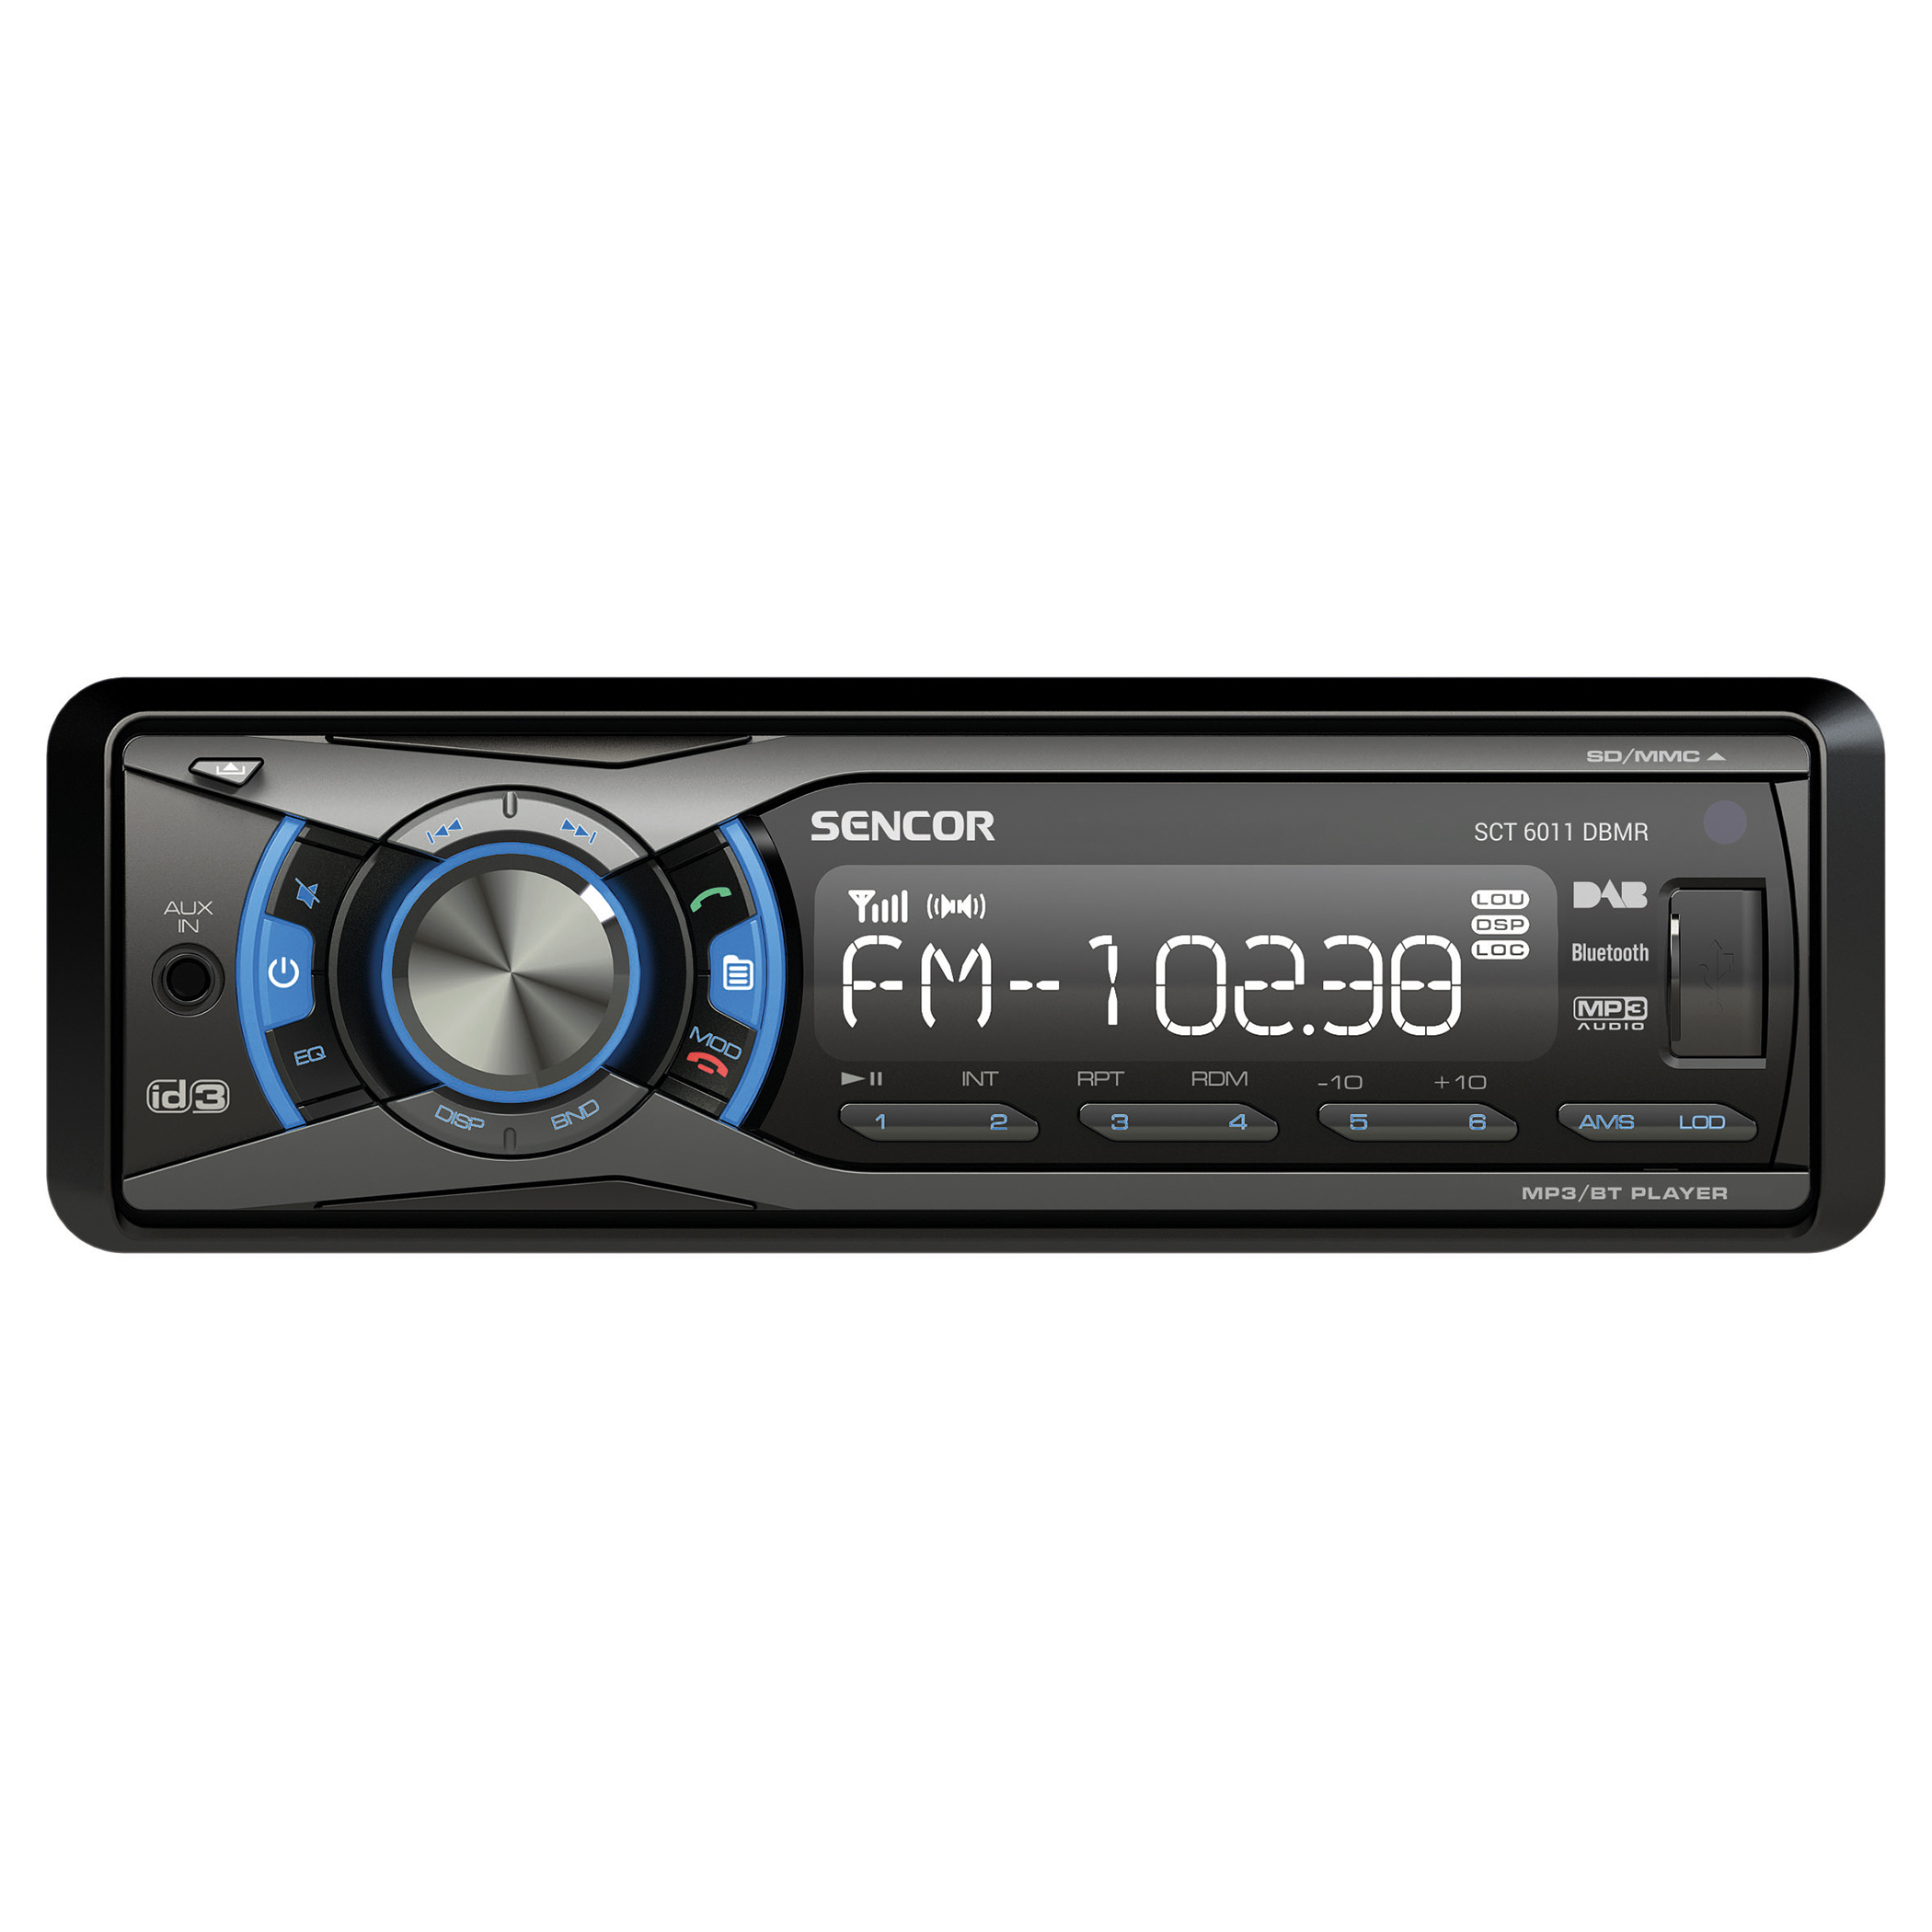 Car Radio with DAB+/AM/FM tuners, SCT 6011DBMR